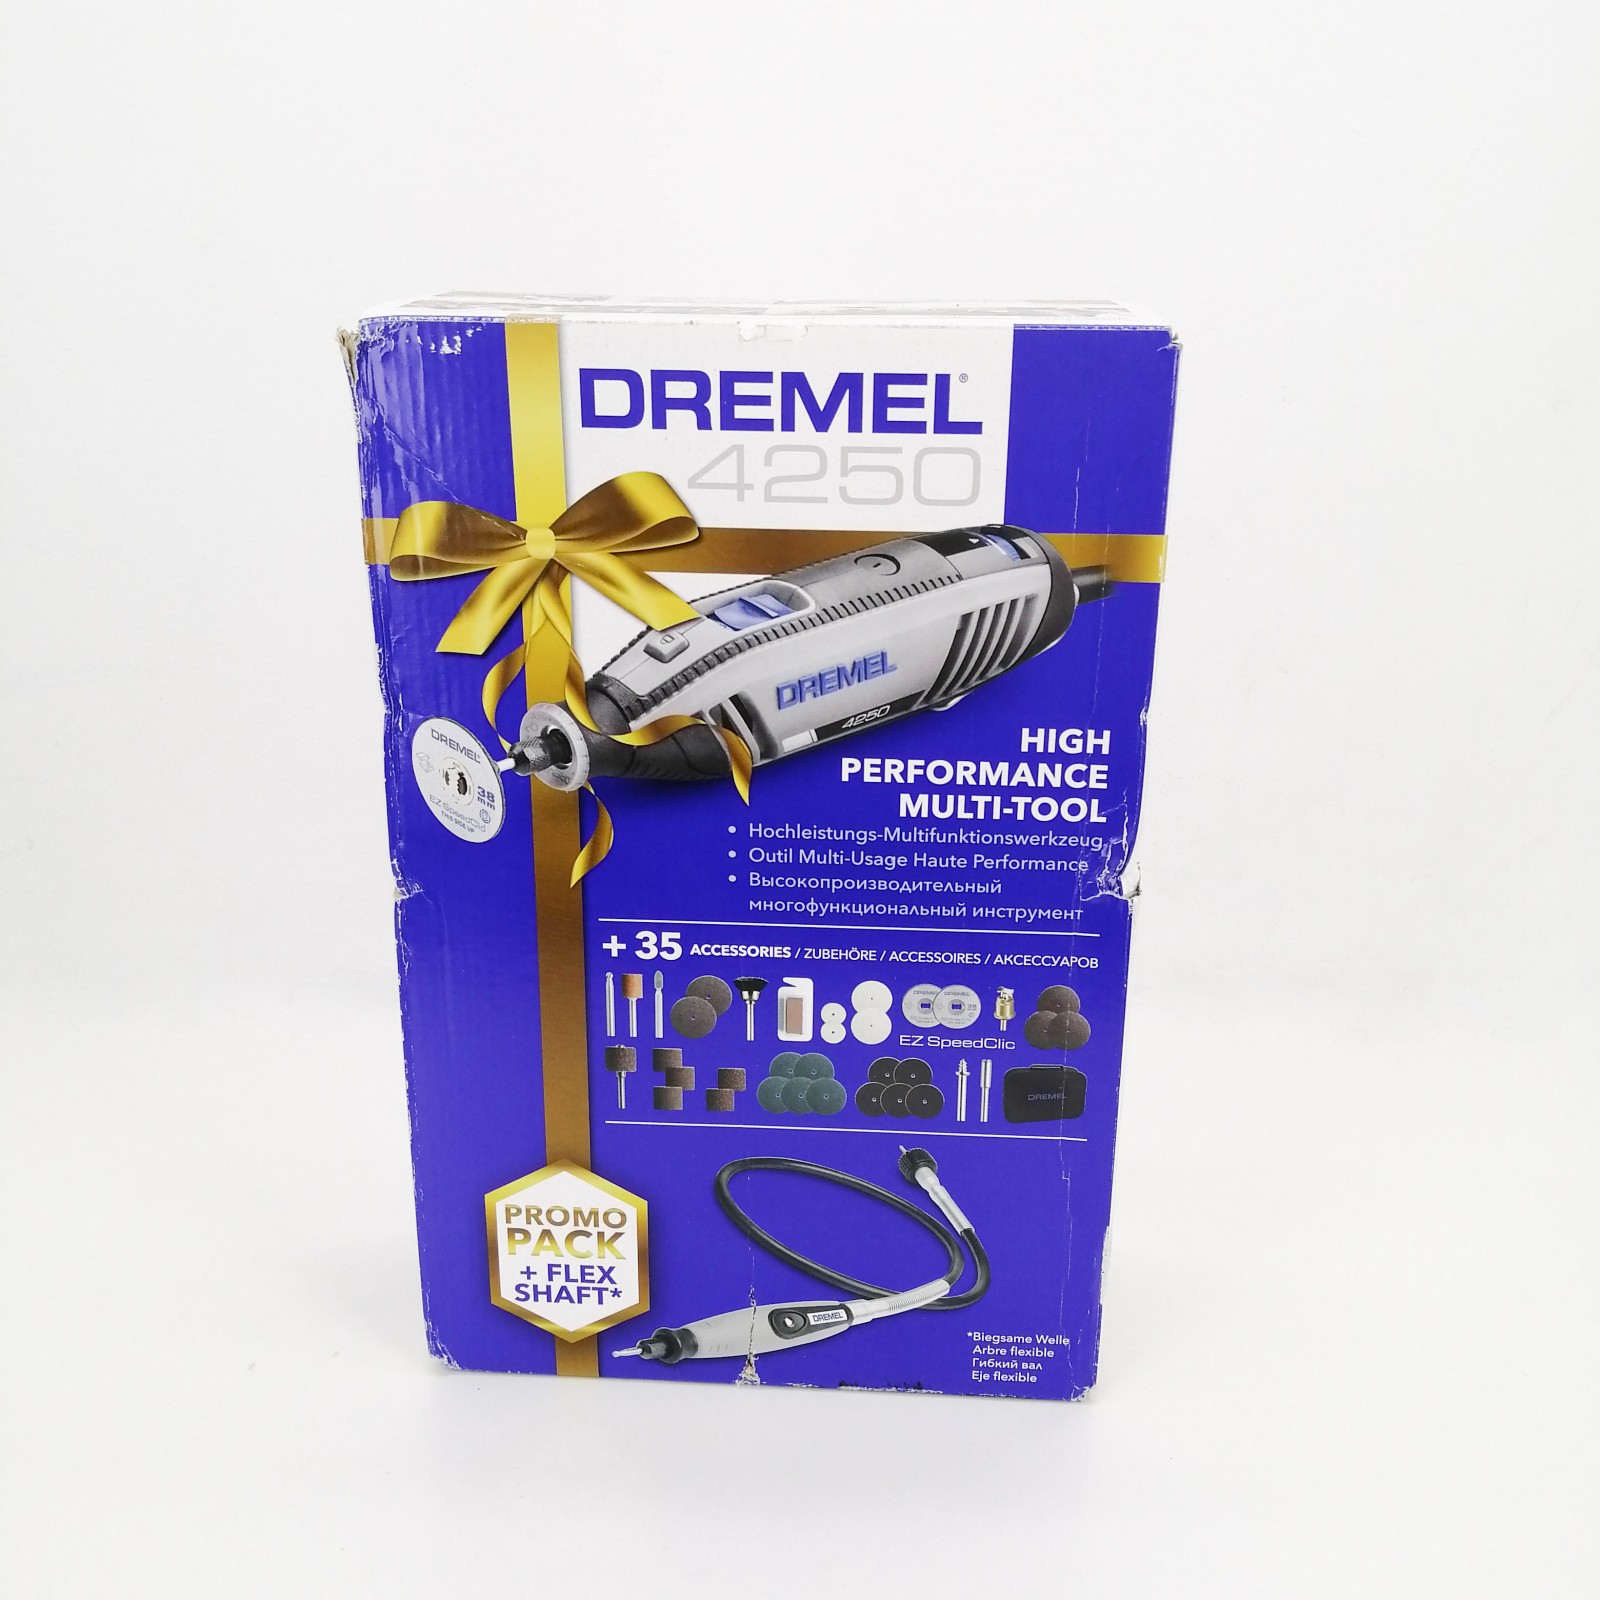 Multiherramienta Dremel 4250 Promo Pack + Flex Shaft con 35 accesorios  NUEVA A ESTRENAR